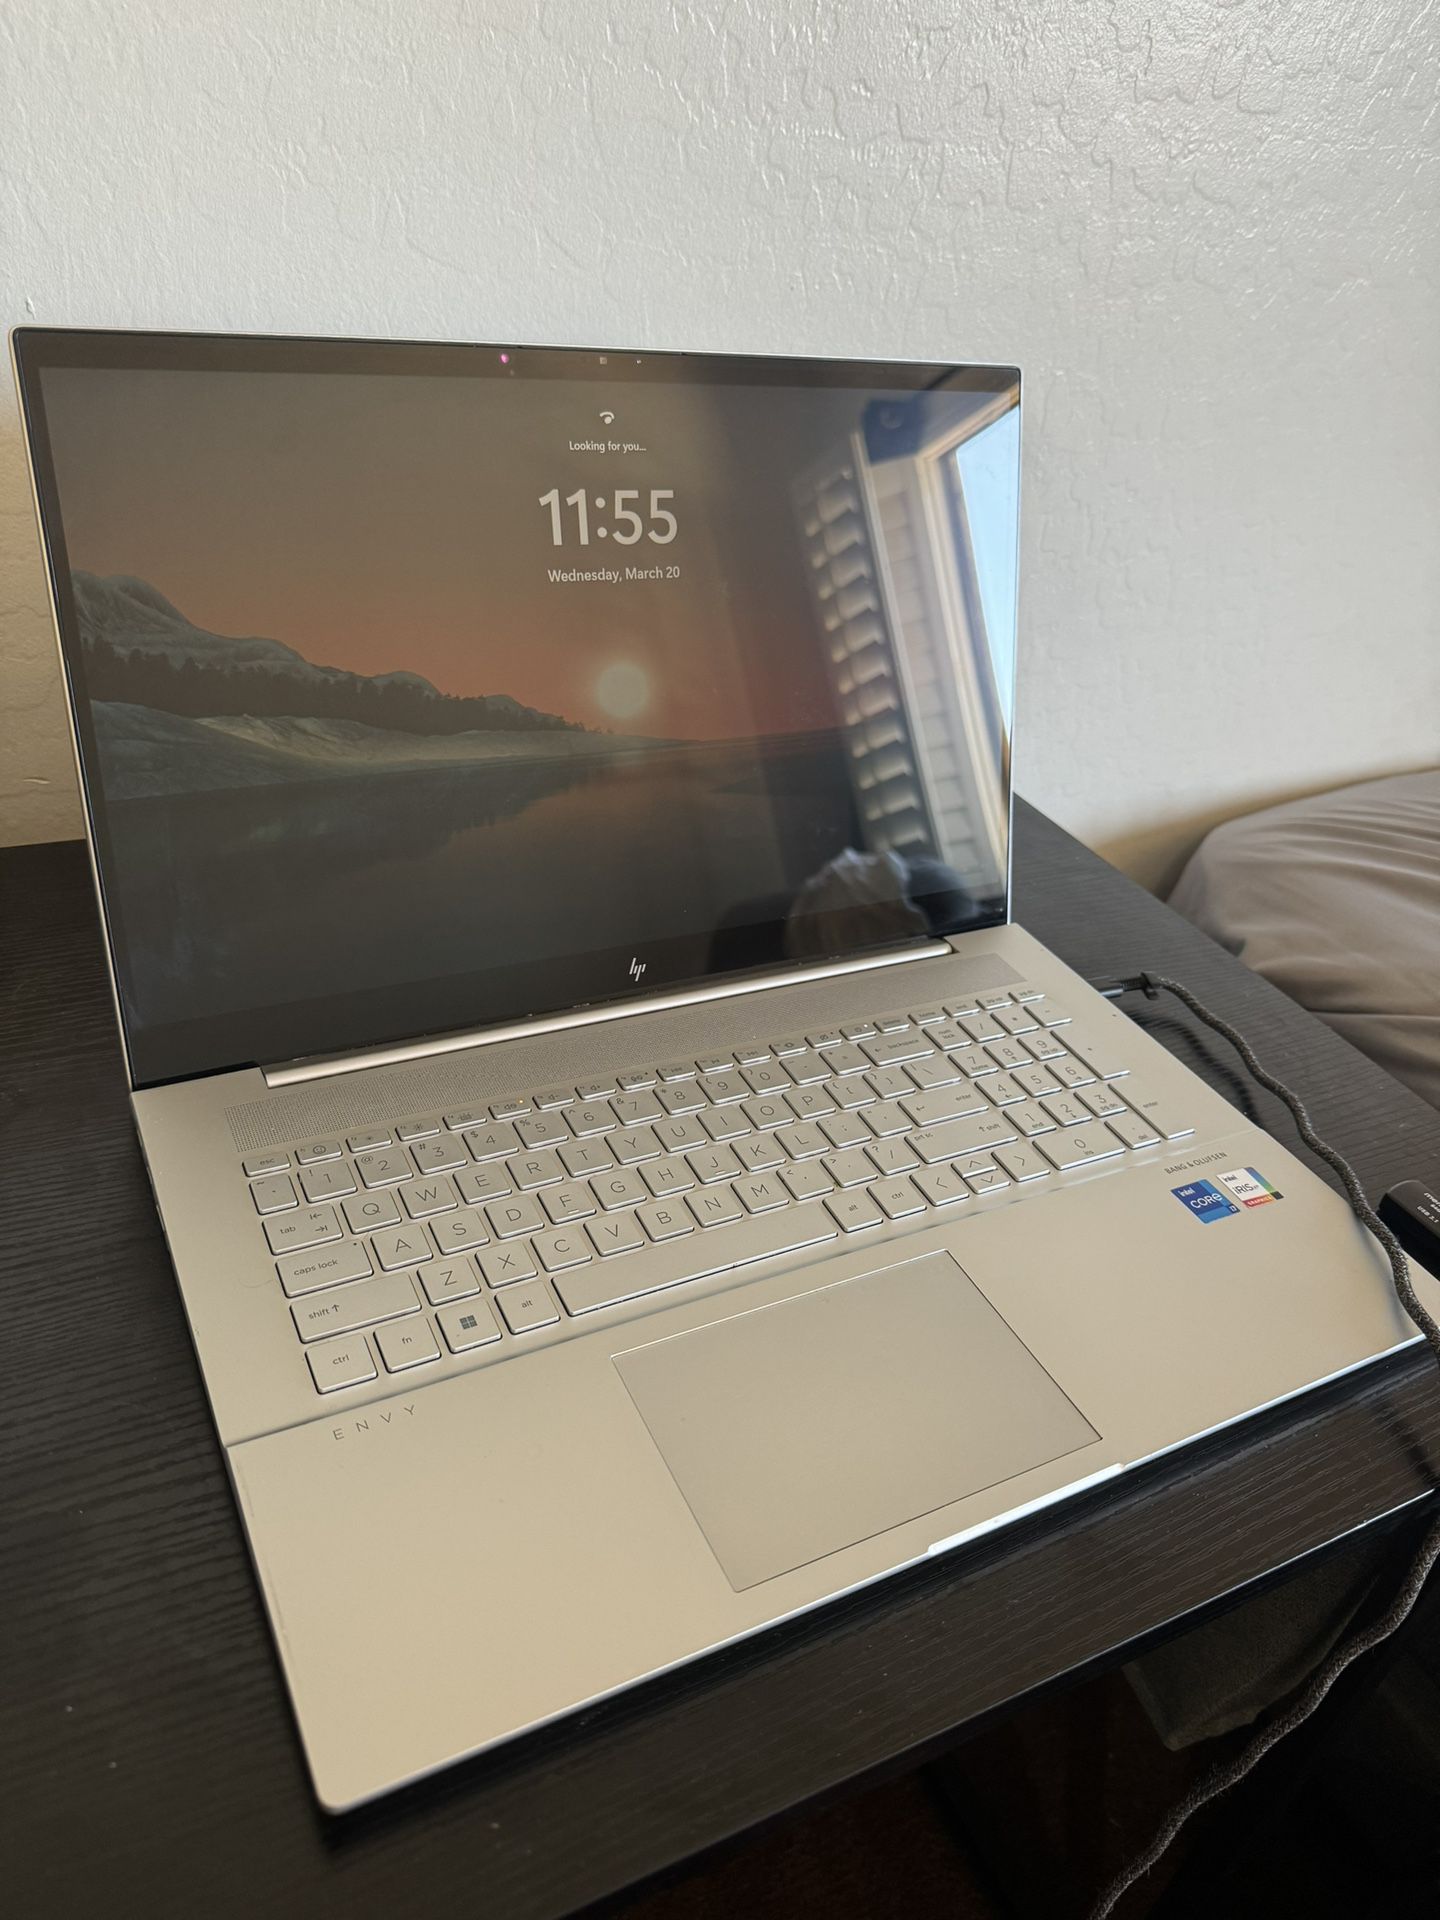 Hp Envy 17.3 Laptop